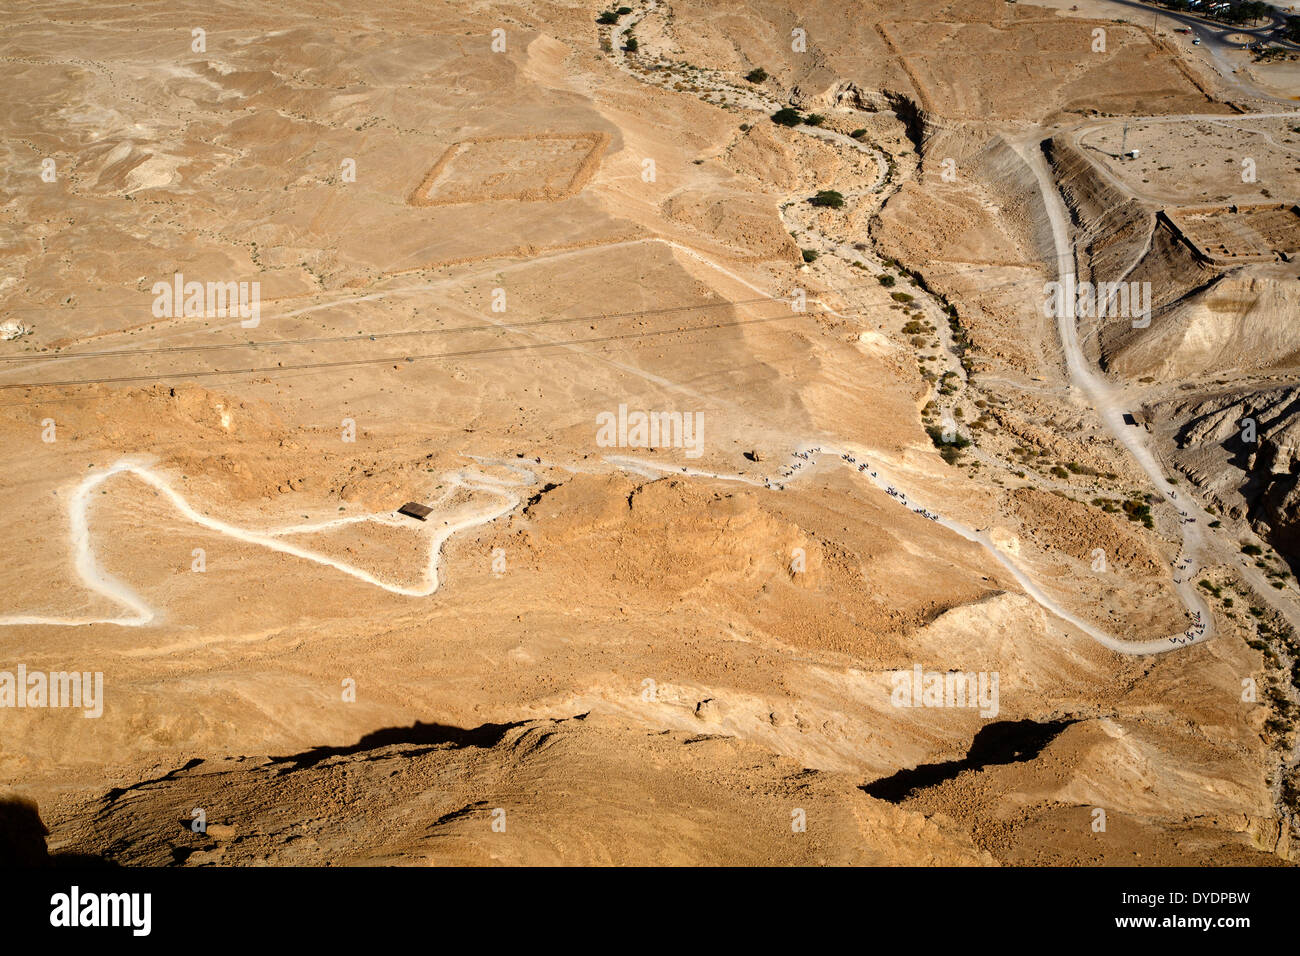 La serpiente camino que conduce a la fortaleza de Masada en el borde del desierto de Judea, Israel. Foto de stock